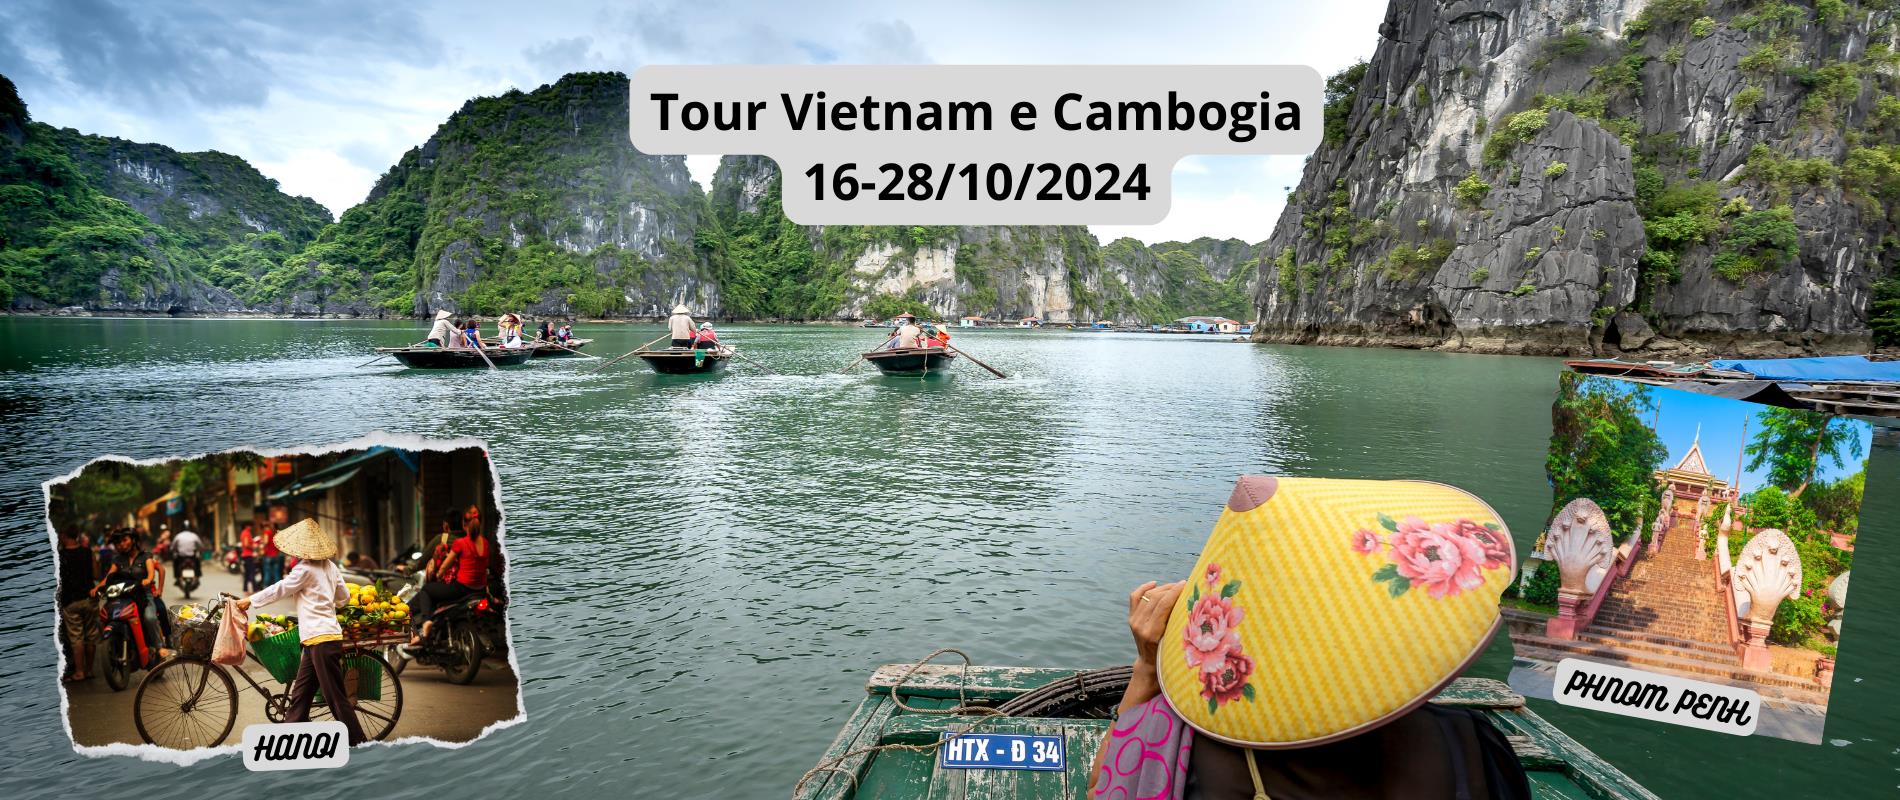 Tour Vietnam e Cambogia